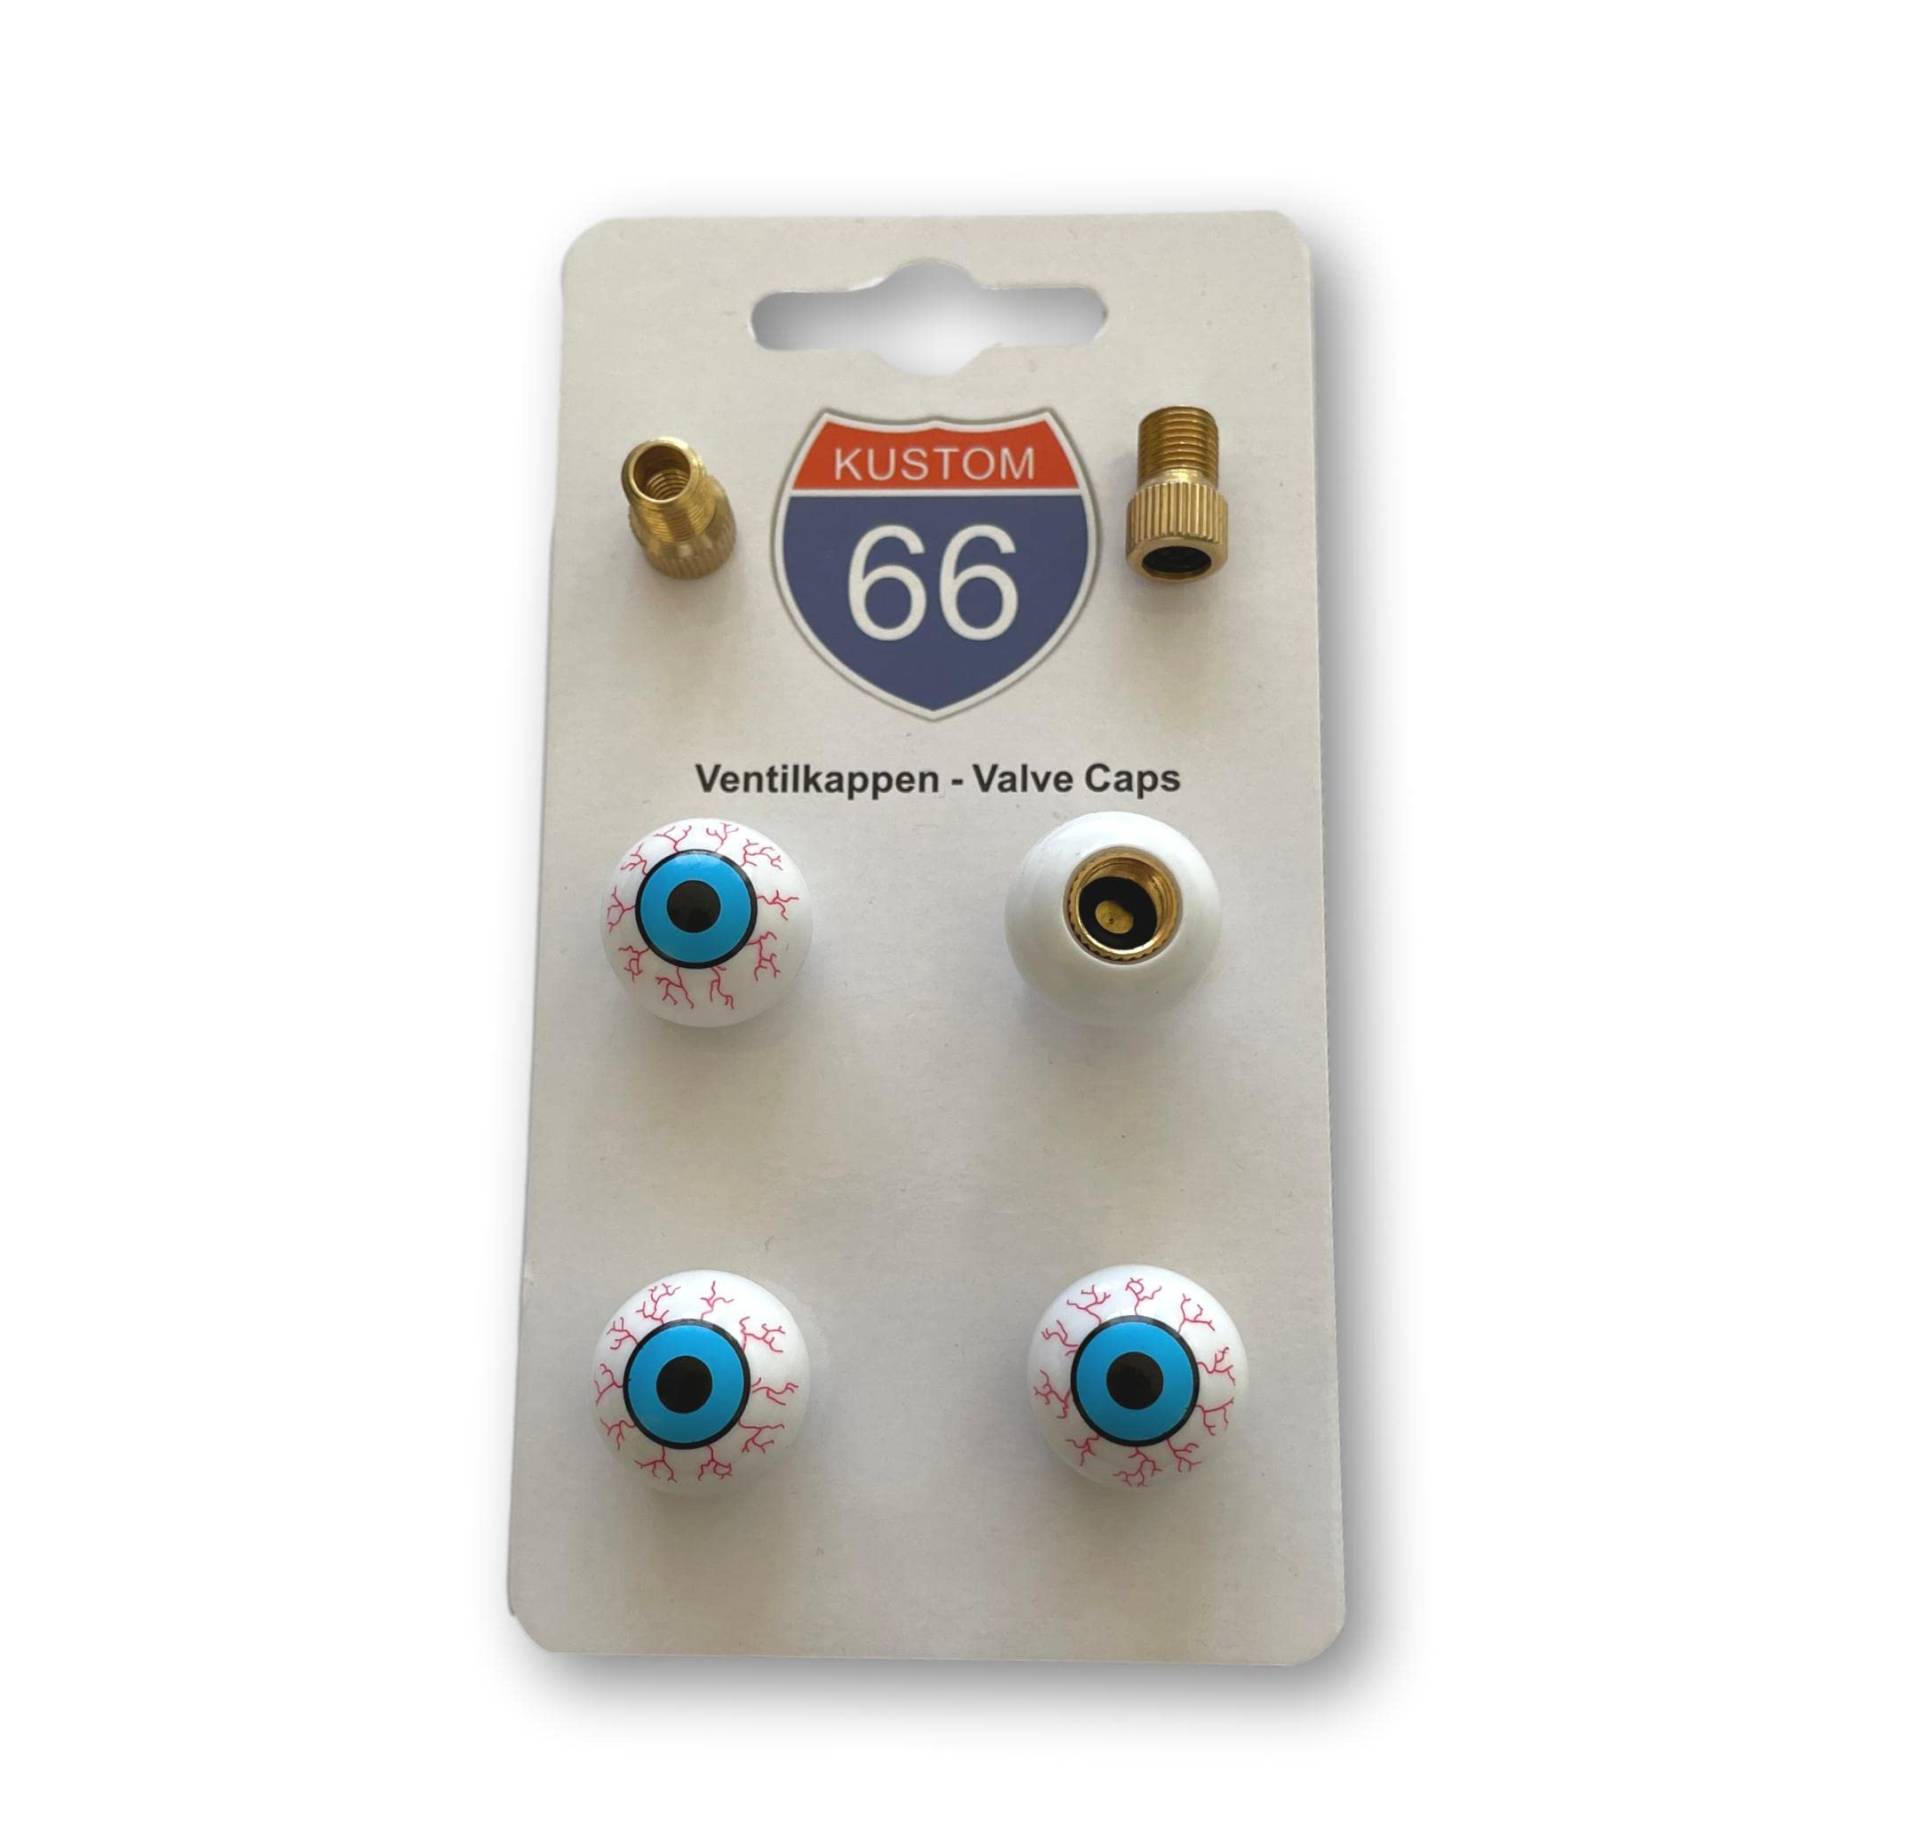 4er Set Ventilkappen + 2 Fahrradadapter - Augen mit Adern - für jedes Auto, Motorrad und Fahrrad geeignet von KUSTOM66